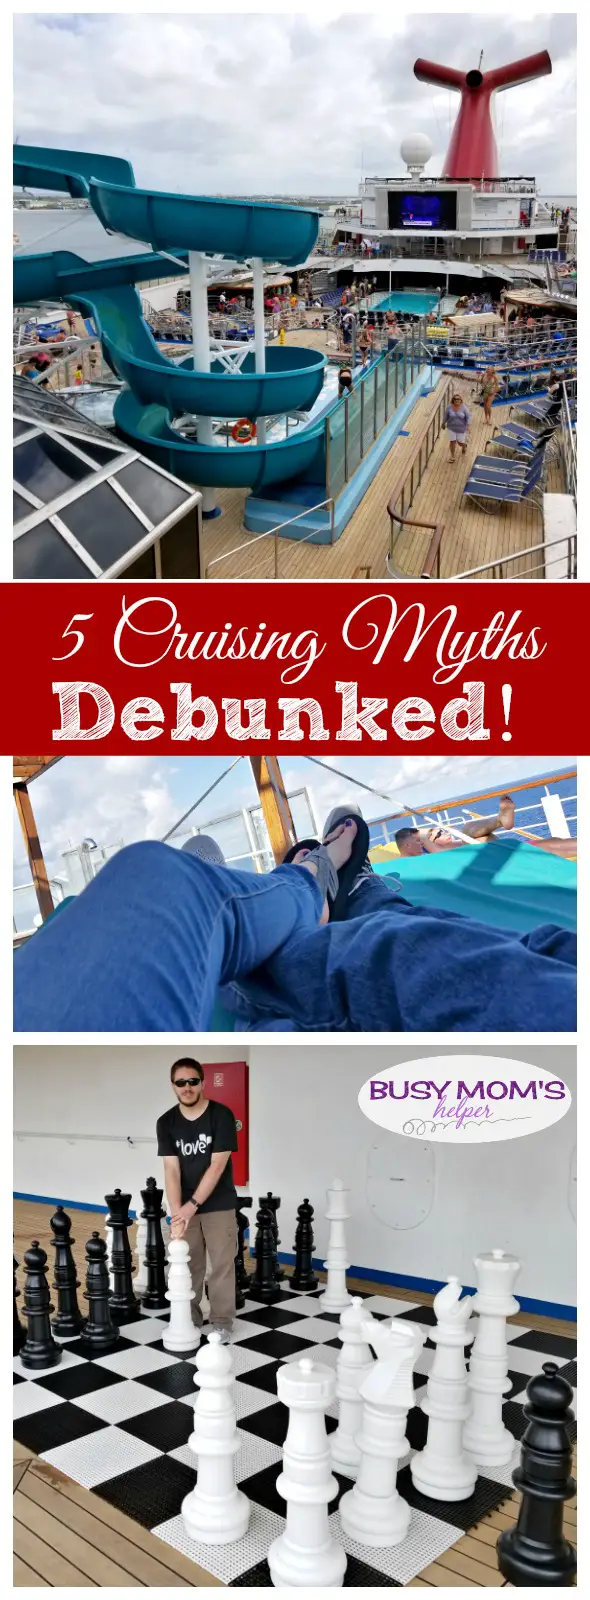 5 Cruise Myths Debunked! #ad #cruisingcarnival